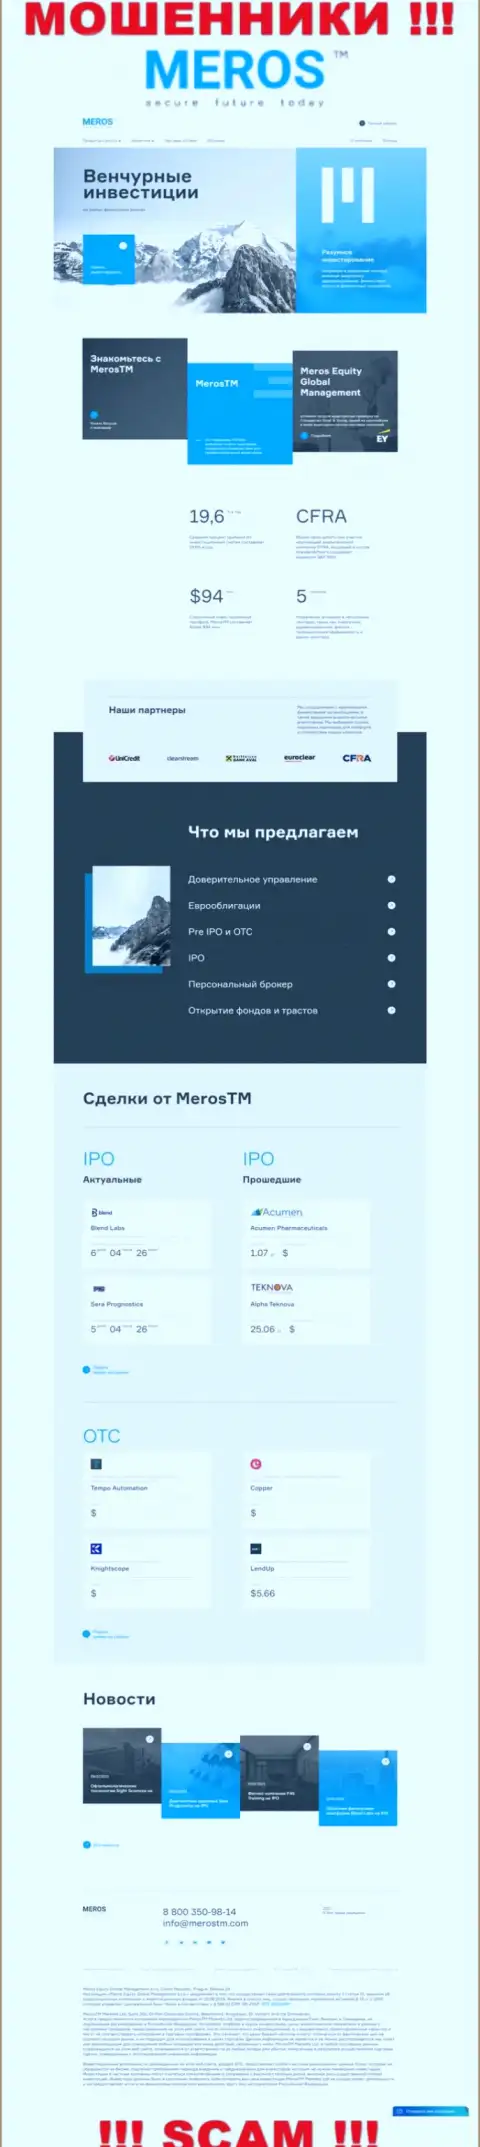 Разбор официального web-сервиса мошенников MerosTM Com